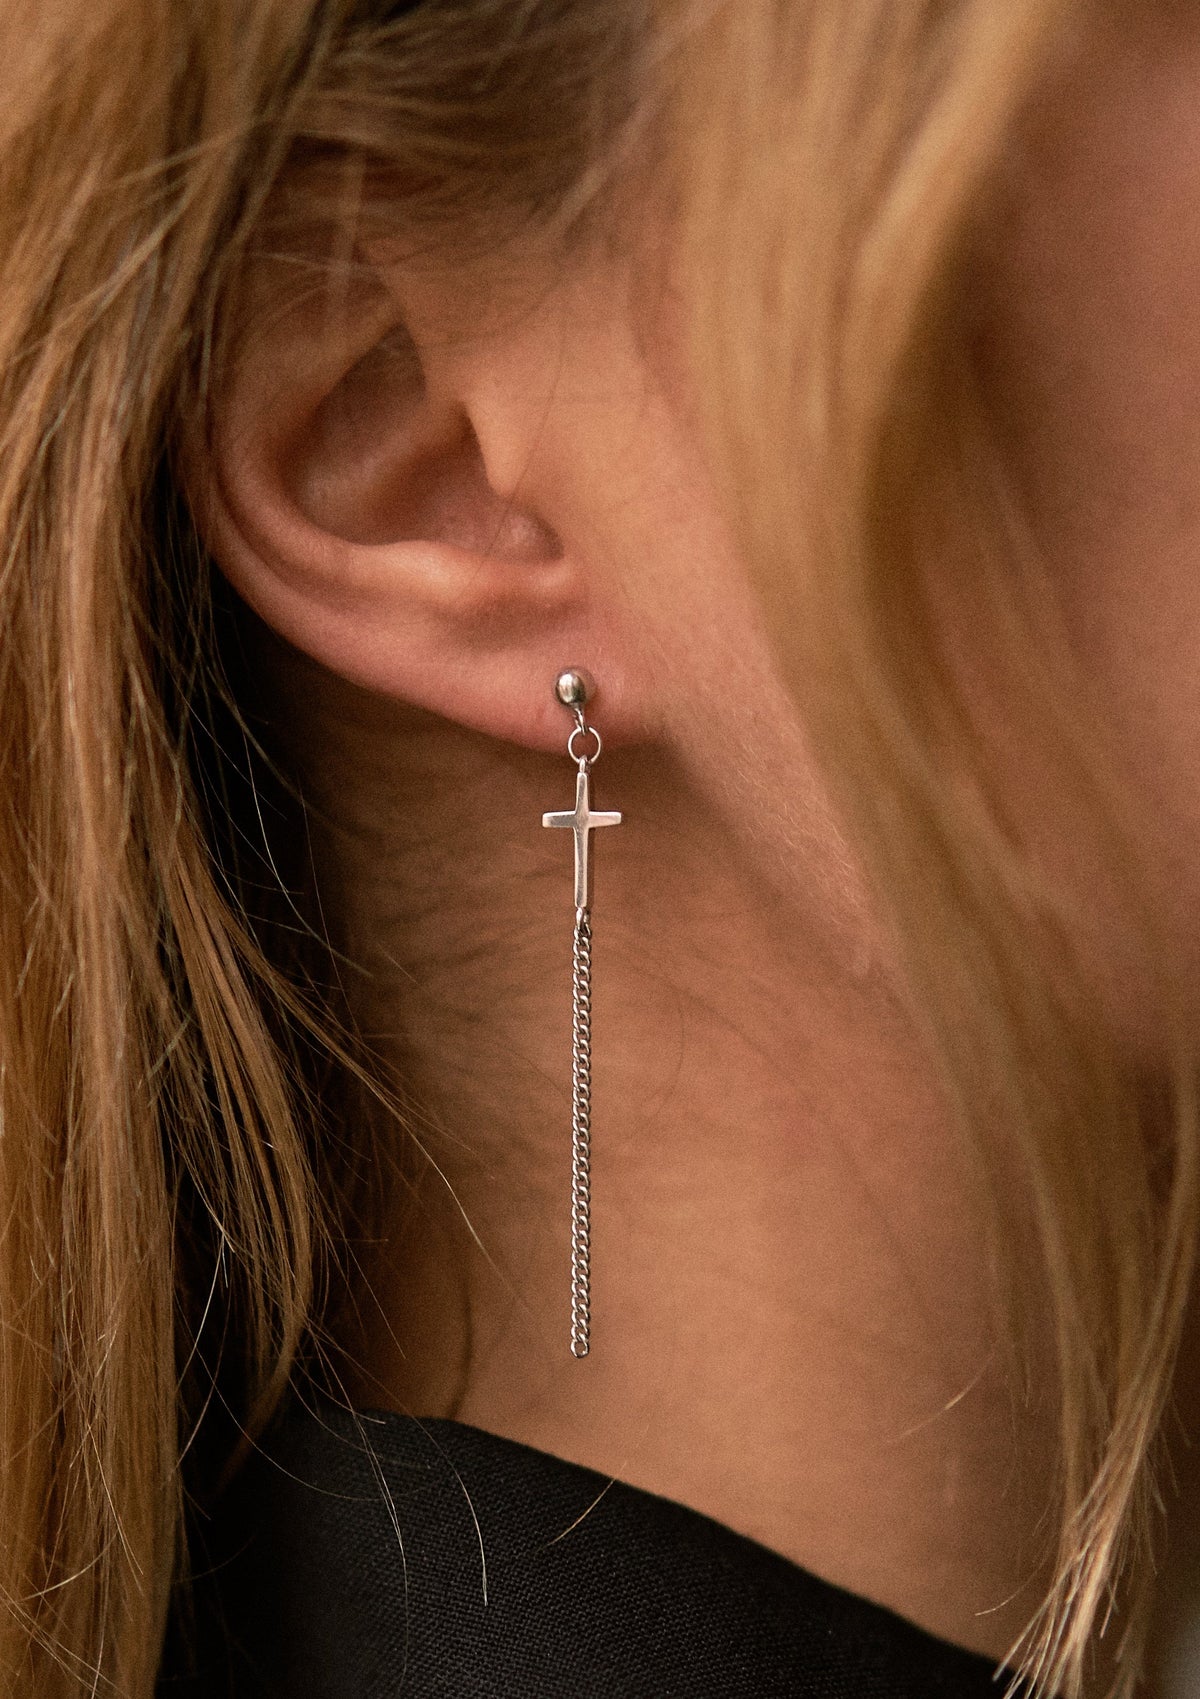 Cyberpunk 920 Sterling Silver cross earring